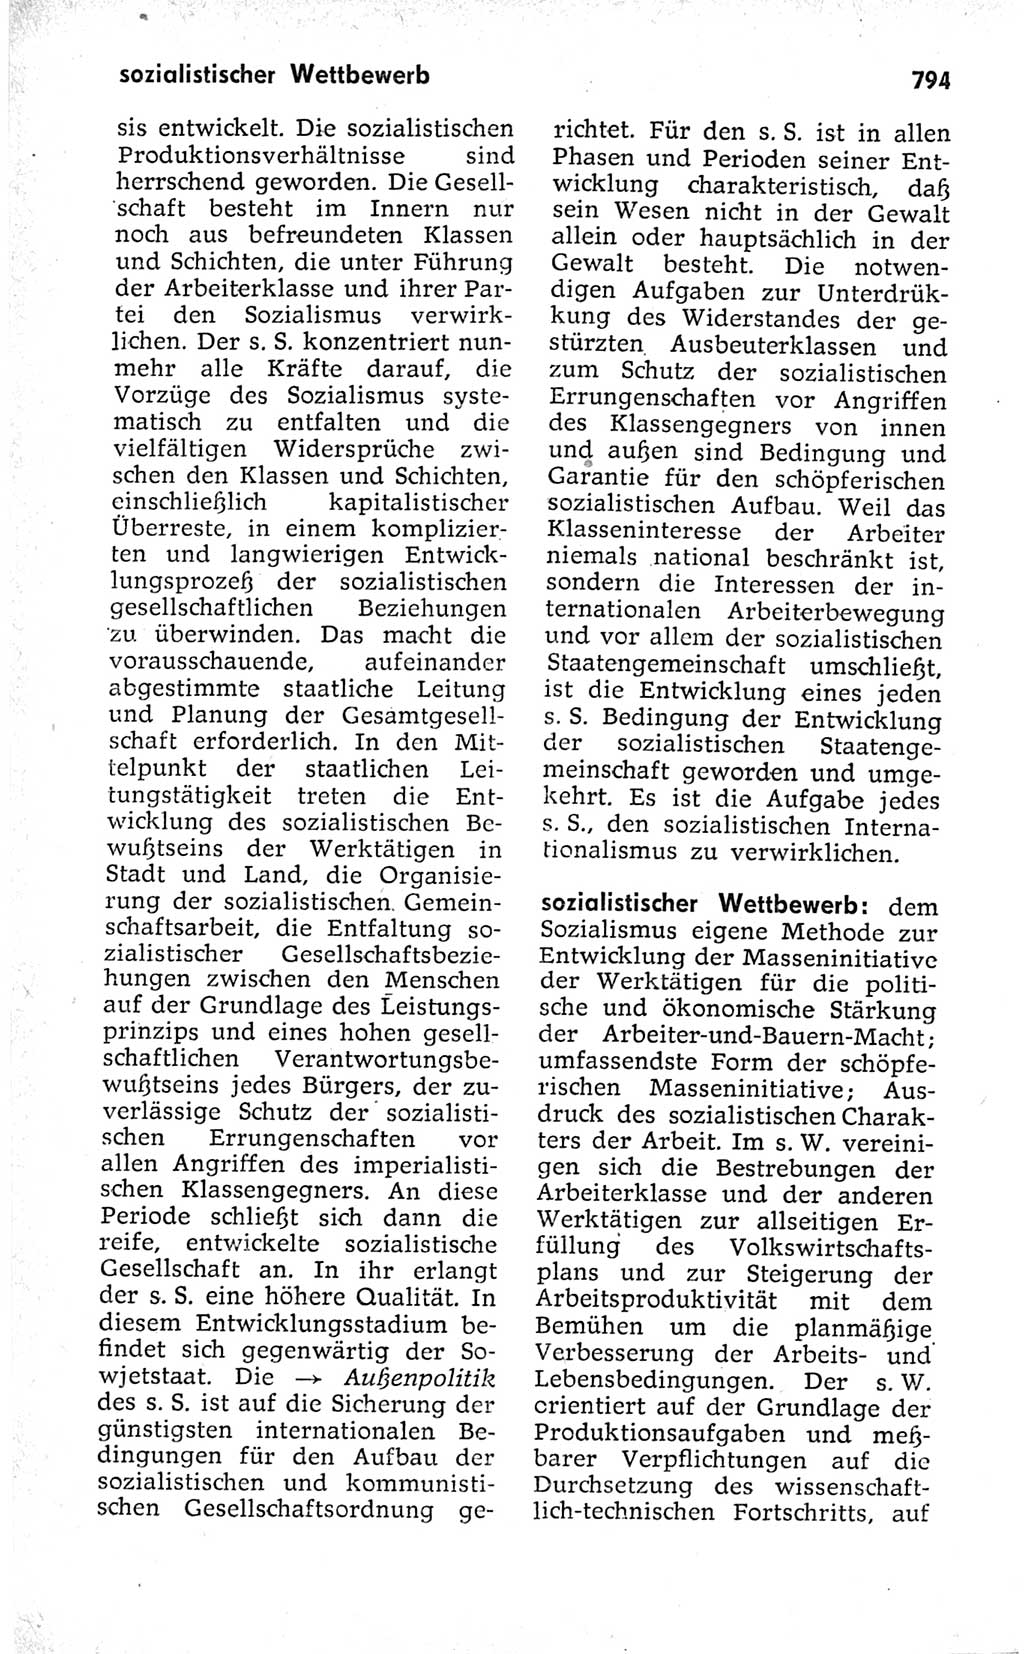 Kleines politisches Wörterbuch [Deutsche Demokratische Republik (DDR)] 1973, Seite 794 (Kl. pol. Wb. DDR 1973, S. 794)